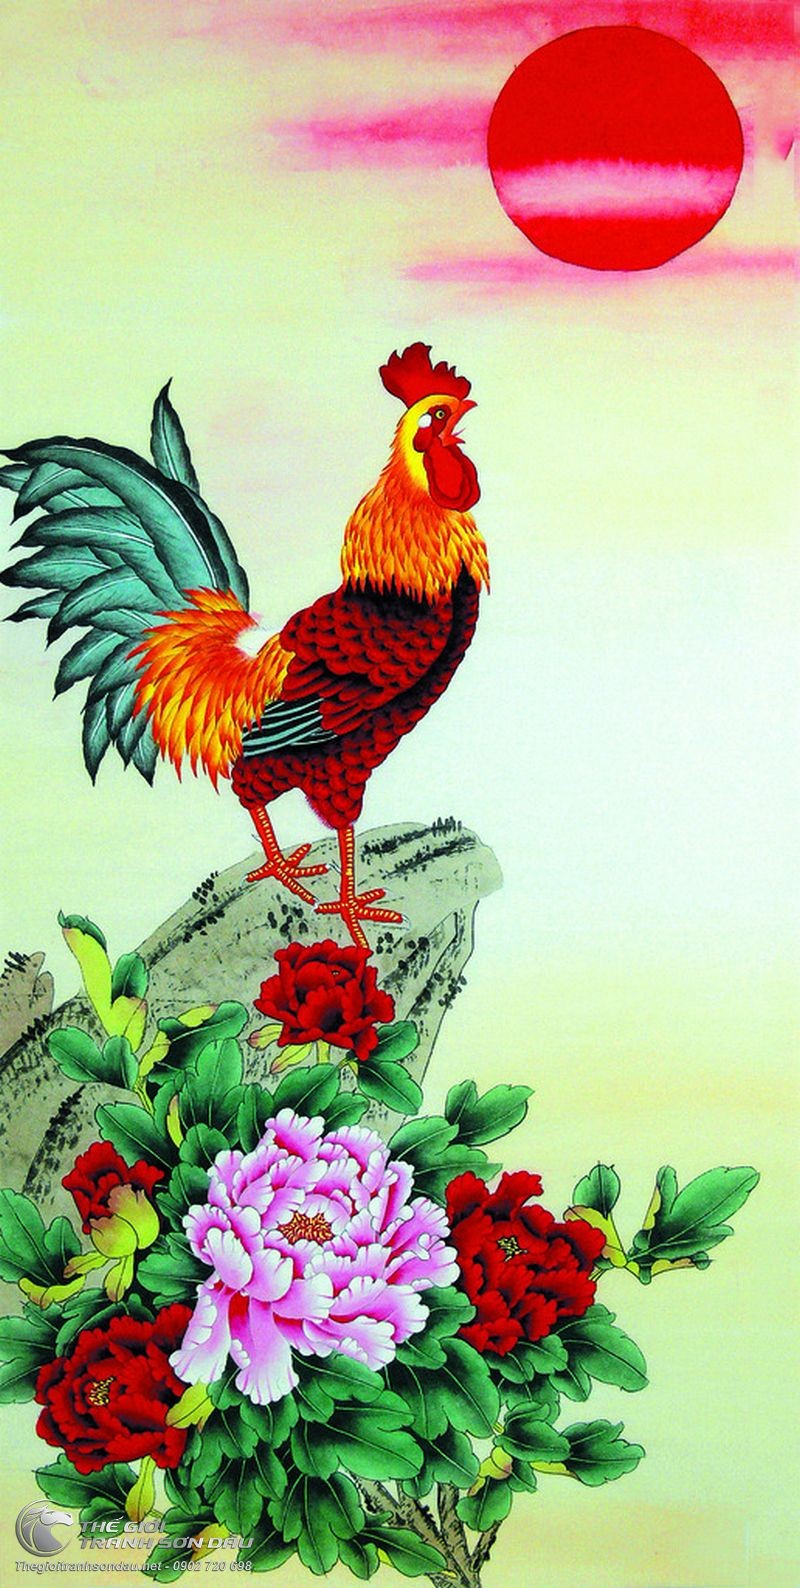 Hãy chiêm ngưỡng bức tranh sơn dầu đẹp về gà trống và hoa mẫu đơn, tuyệt phẩm nghệ thuật với giá tốt nhất trên thị trường. Sự kết hợp giữa màu sắc tươi sáng của hoa mẫu đơn và hình ảnh mạnh mẽ của gà trống sẽ chinh phục bạn ngay lần đầu tiên.